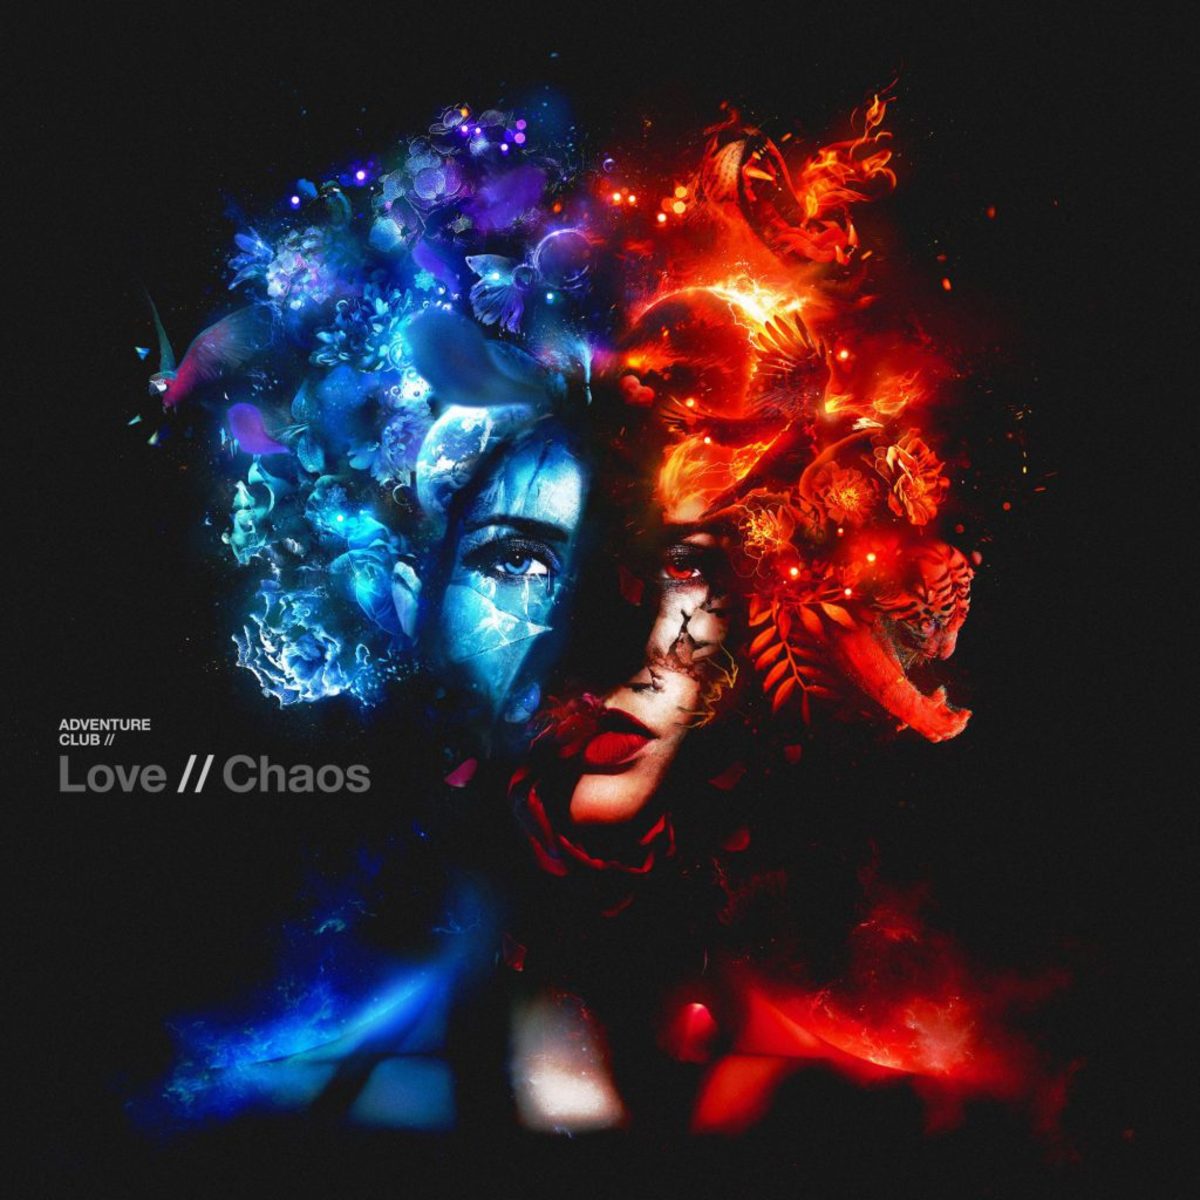 Adventure Club Love // Chaos cover artwork